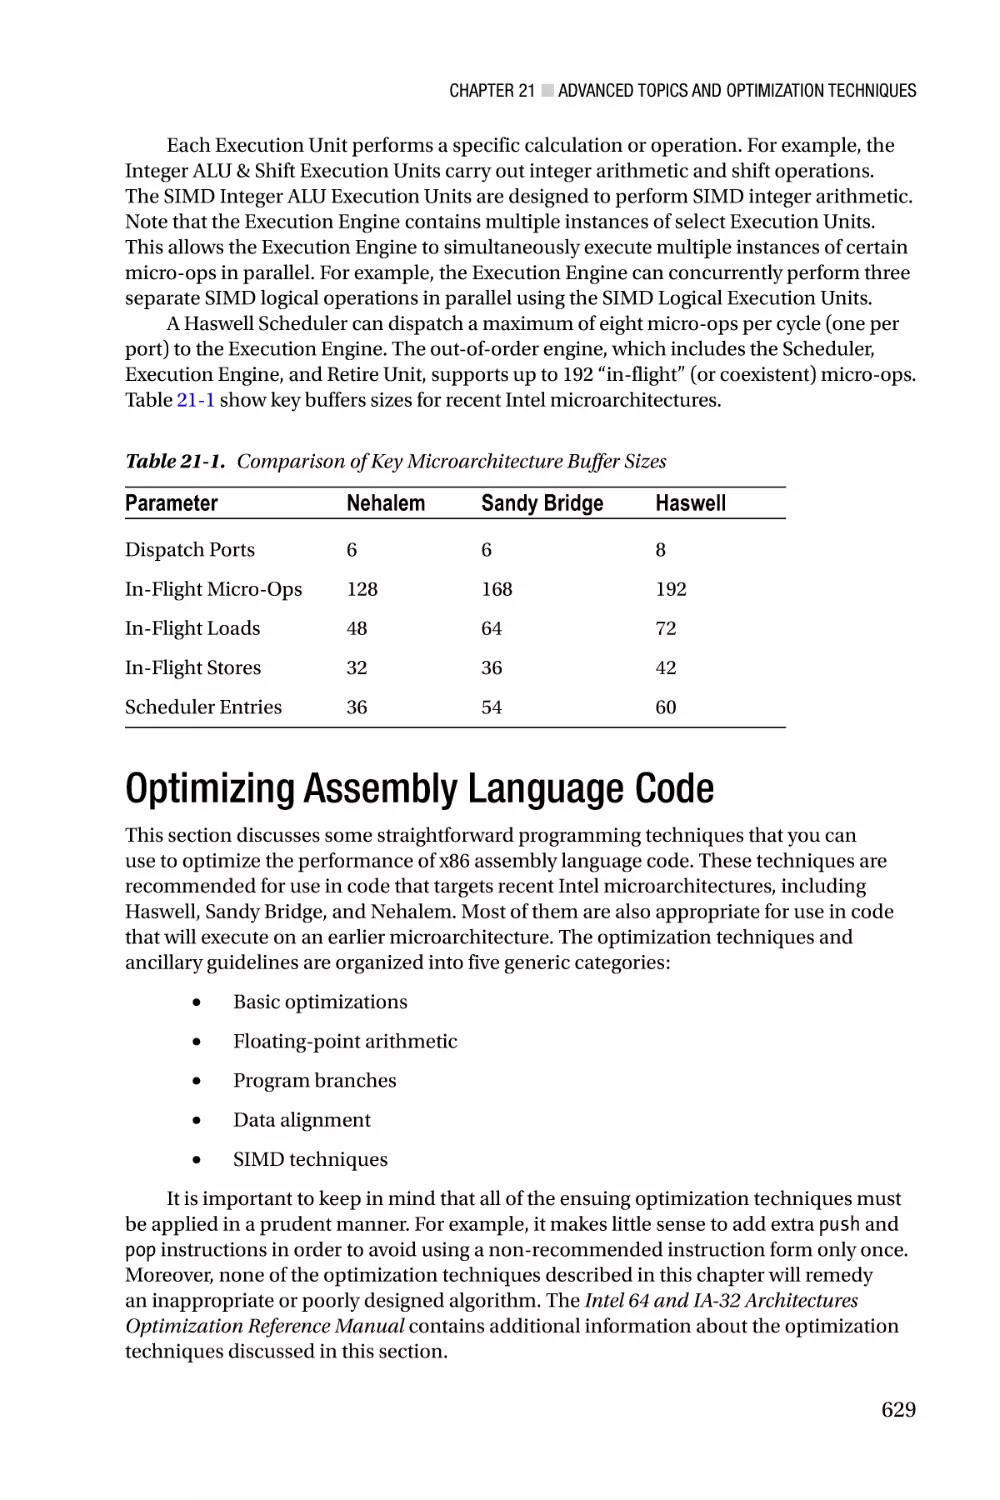 Optimizing Assembly Language Code